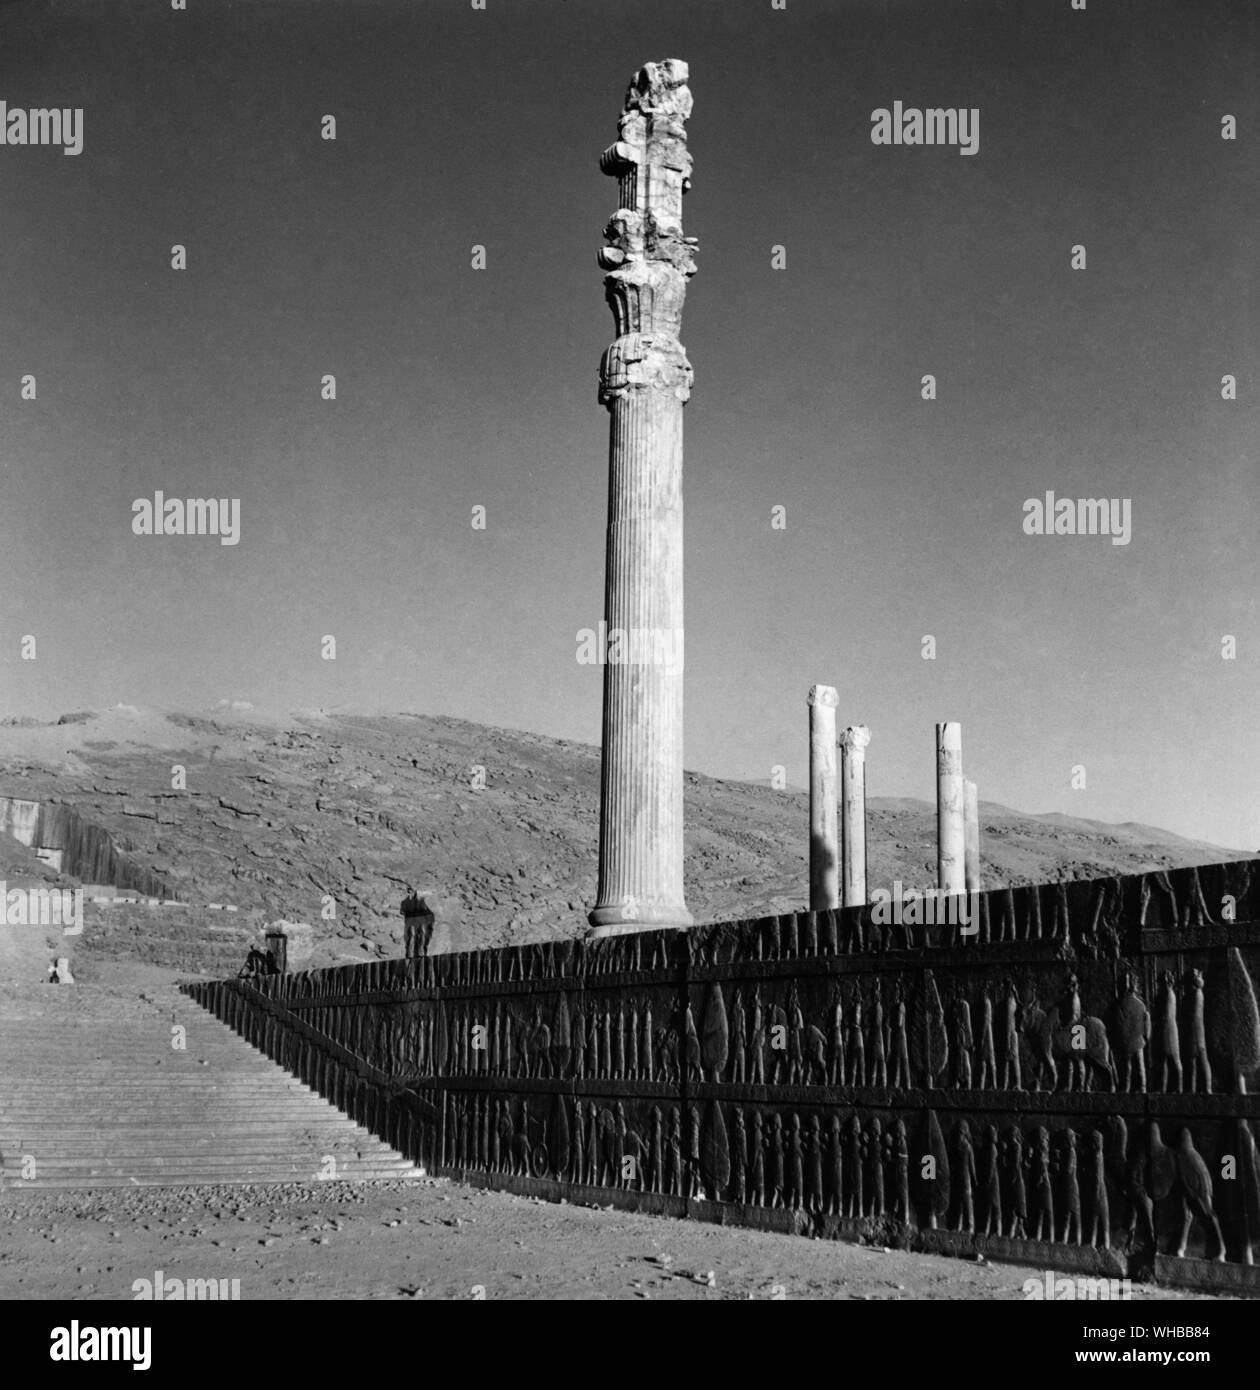 Persepolis : antica città di Persia , capitale dell' Impero Persiano, fondata da Dario . Vicino al moderno Shiraz , Iran Foto Stock